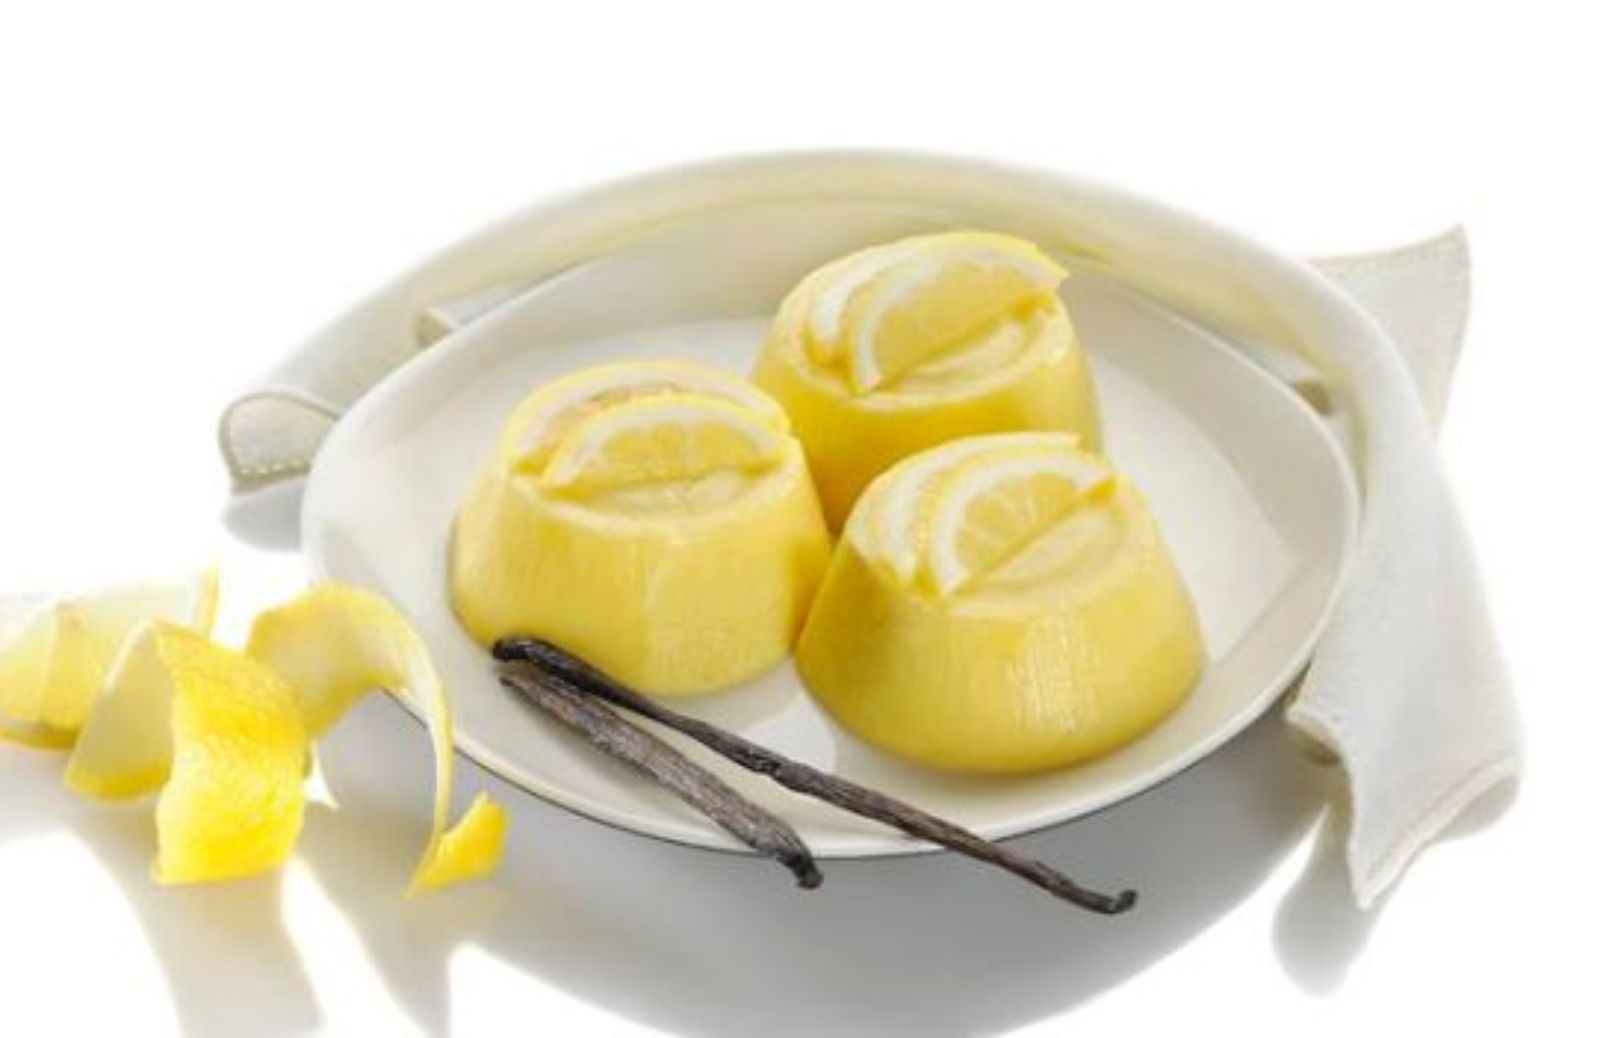 Come fare gli sformatini al limone